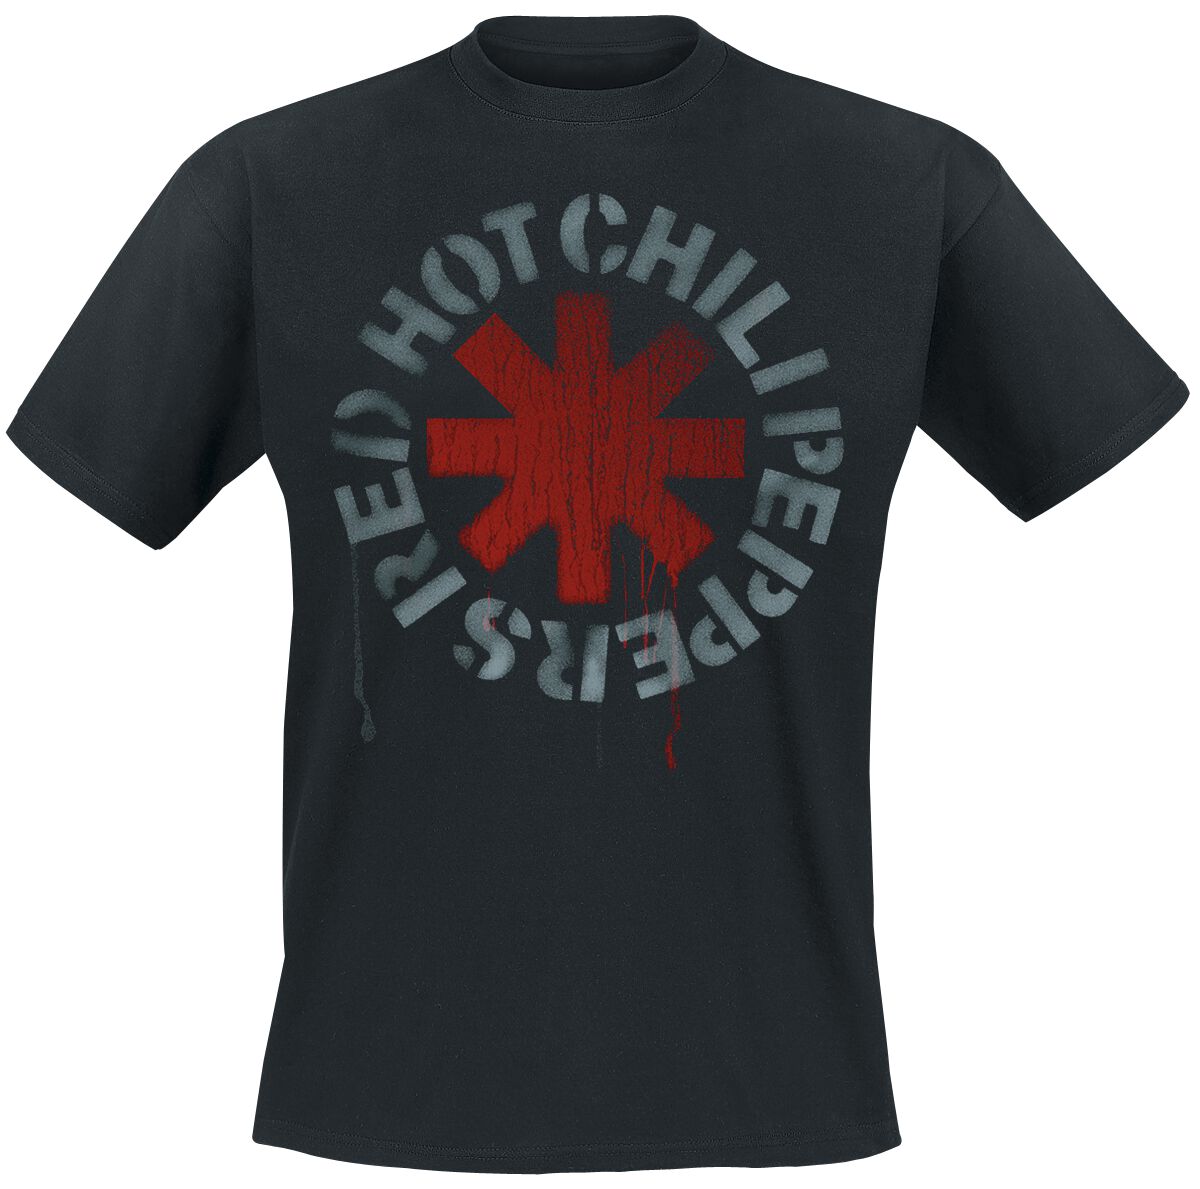 Red Hot Chili Peppers T-Shirt - Stencil Black - S bis 5XL - für Männer - Größe XL - schwarz  - Lizenziertes Merchandise!